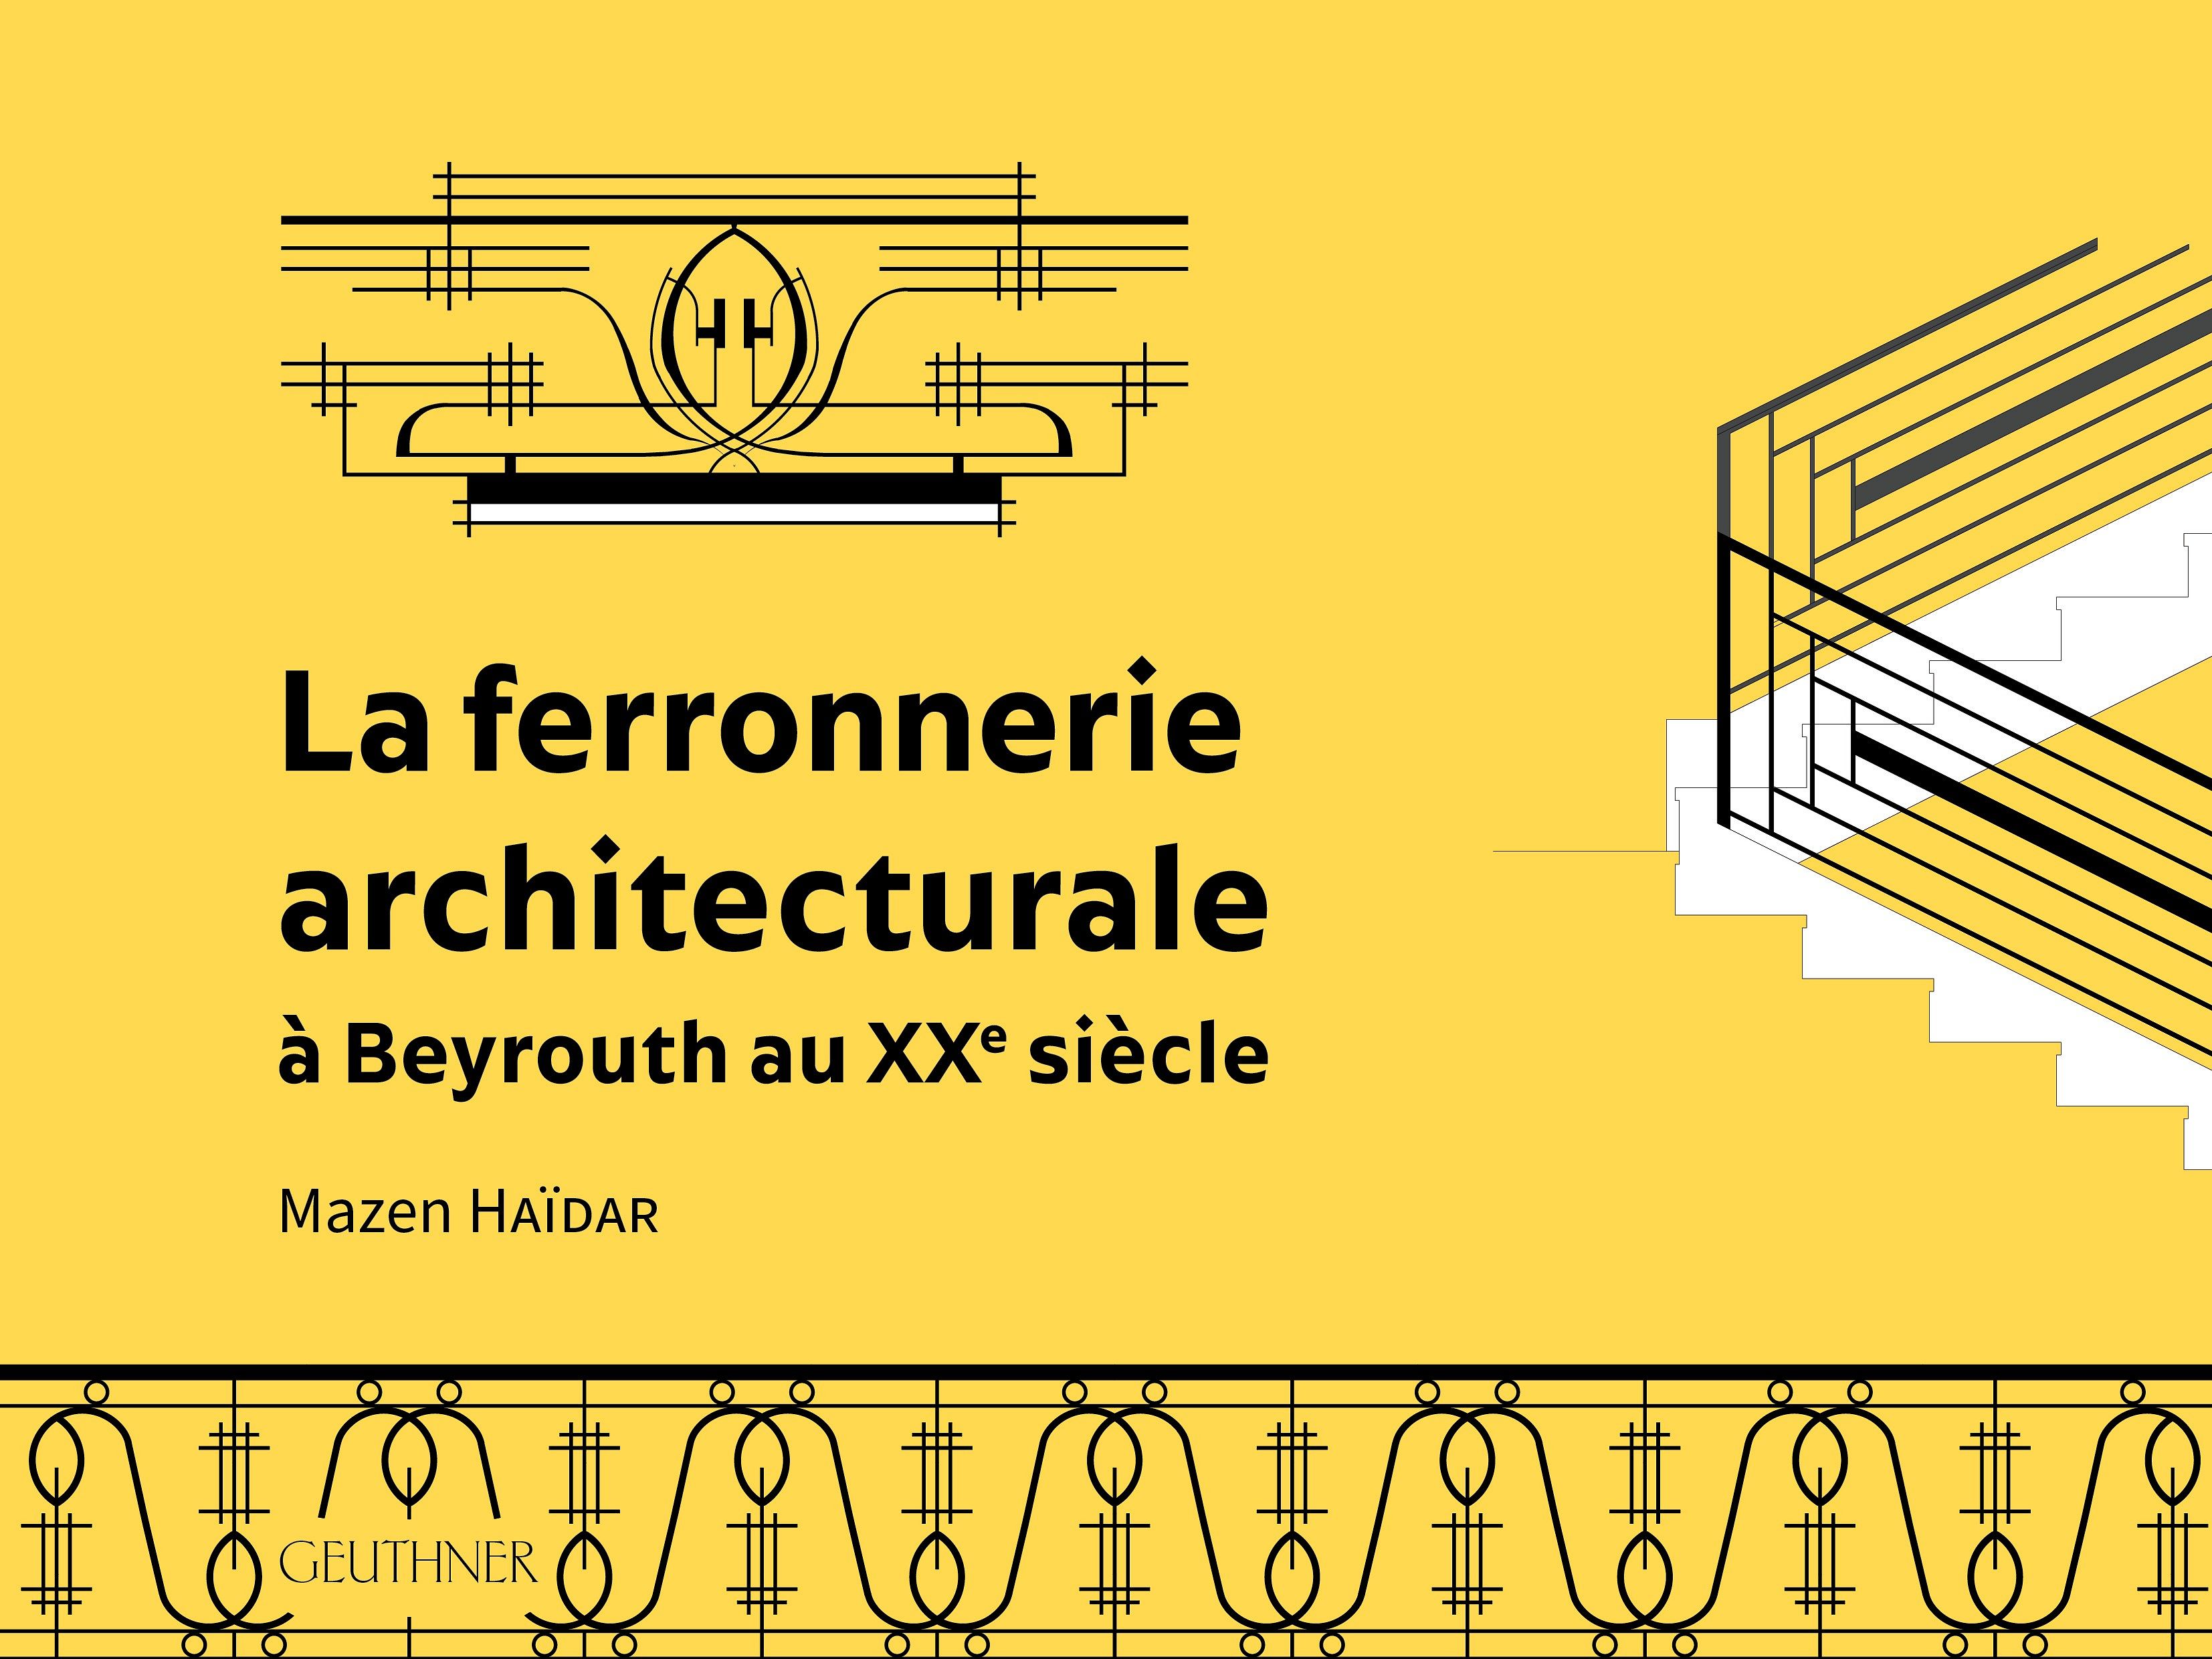 La ferronnerie architecturale à Beyrouth au XXe siècle, Mazen Haïdar thumbnail